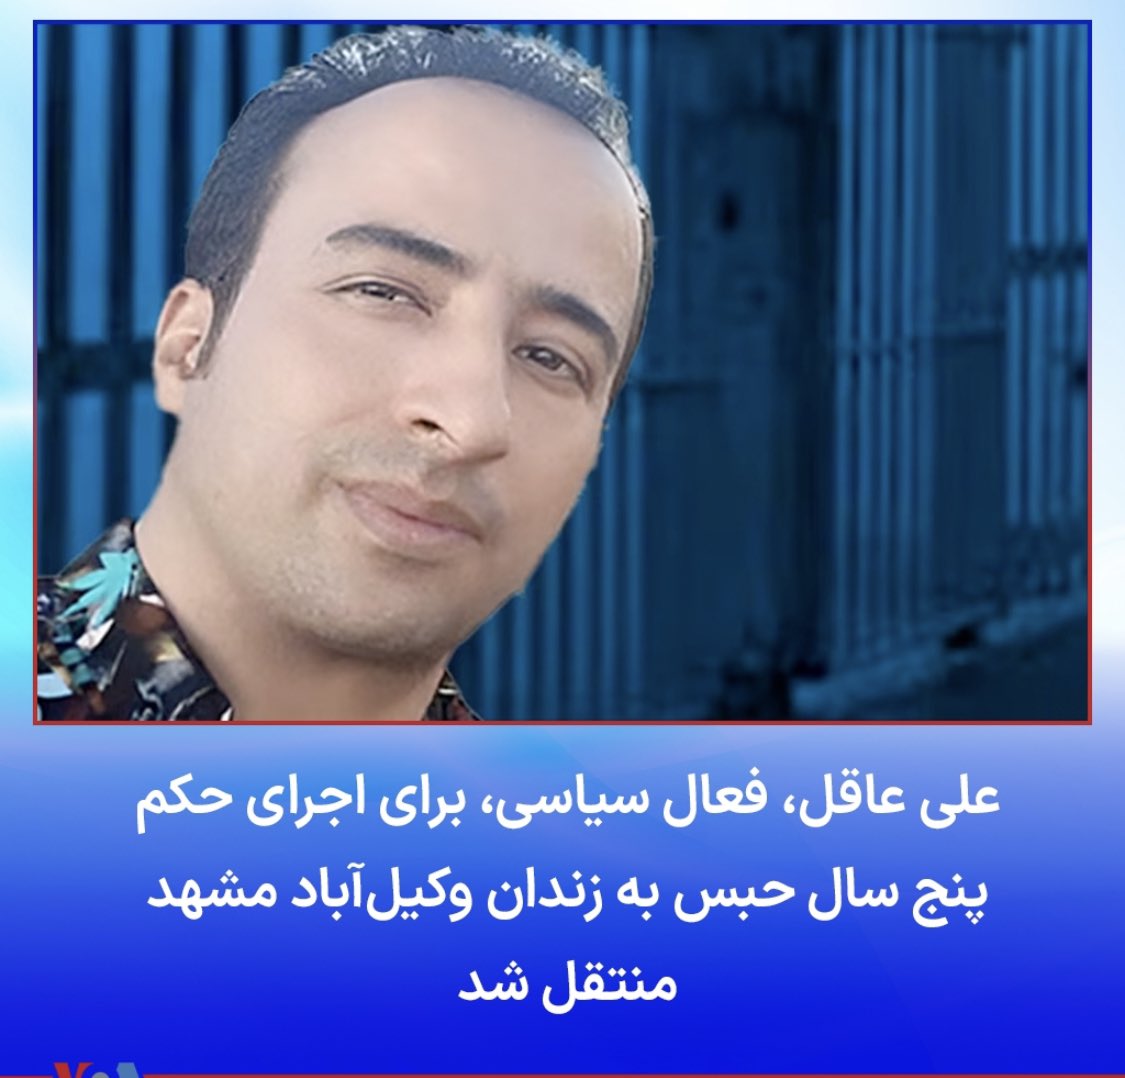 #علی_عاقل فعال سیاسی و پدر سه فرزند و هموطن باشرفی که با اتهامات ساختگی رژیم اراذل و اوباش، پنج سال حکم زندان گرفت اما سر خم نکرد
صدای او هستیم

#توماج_صالحى 
#IRGCterrorists